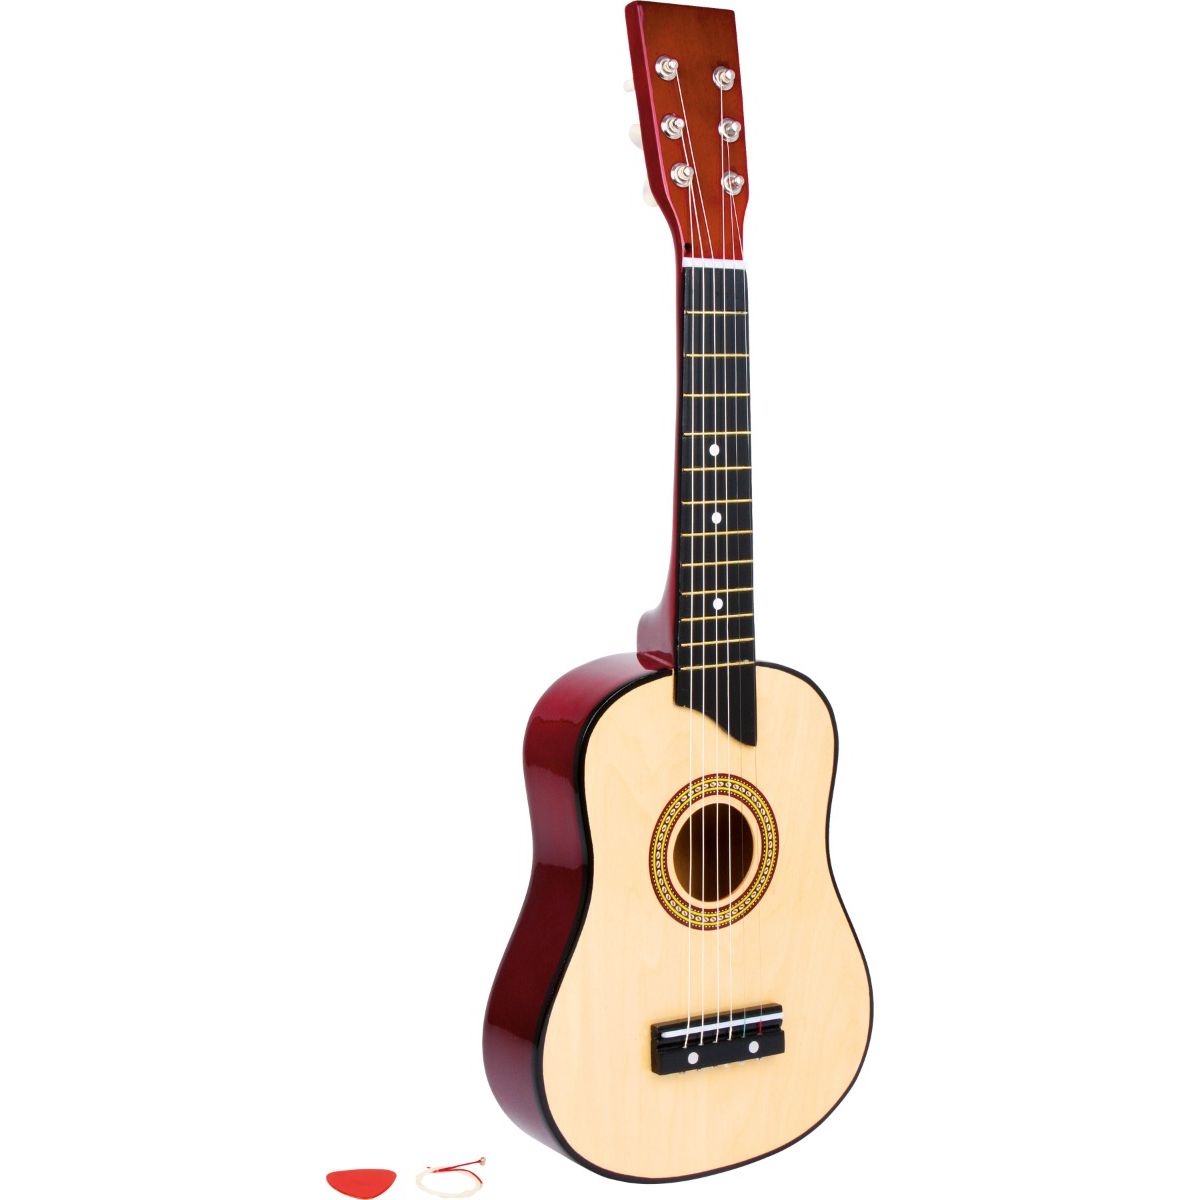 Guitarra de juguete para niños en Color Natural - Legler + 3 años - Shopmami